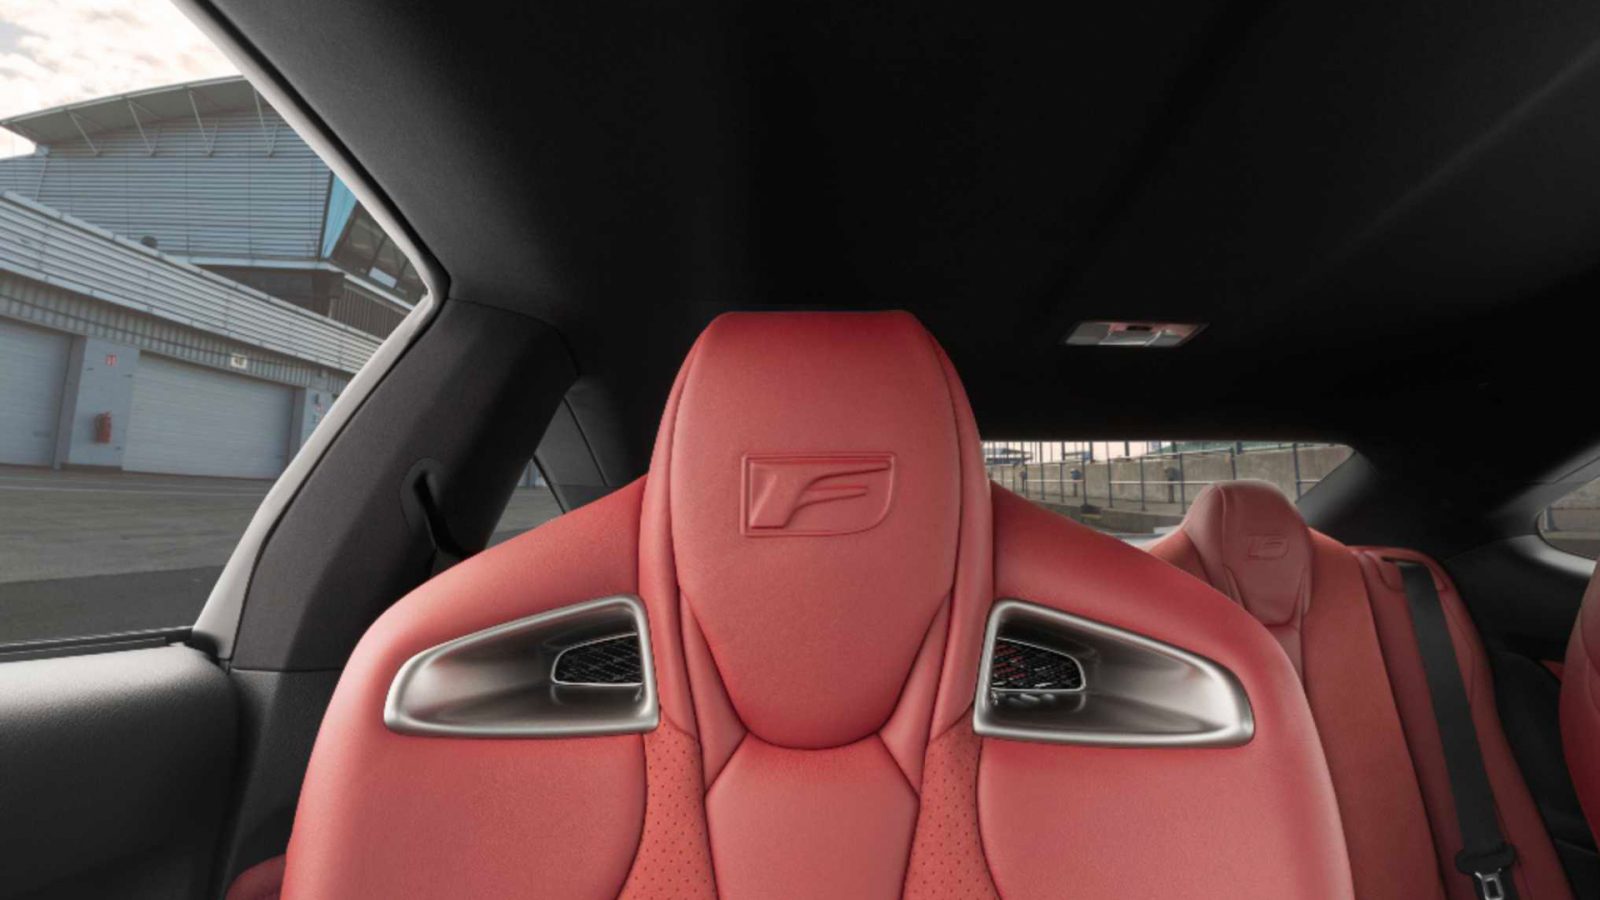 Virtual background of Lexus RC F interior